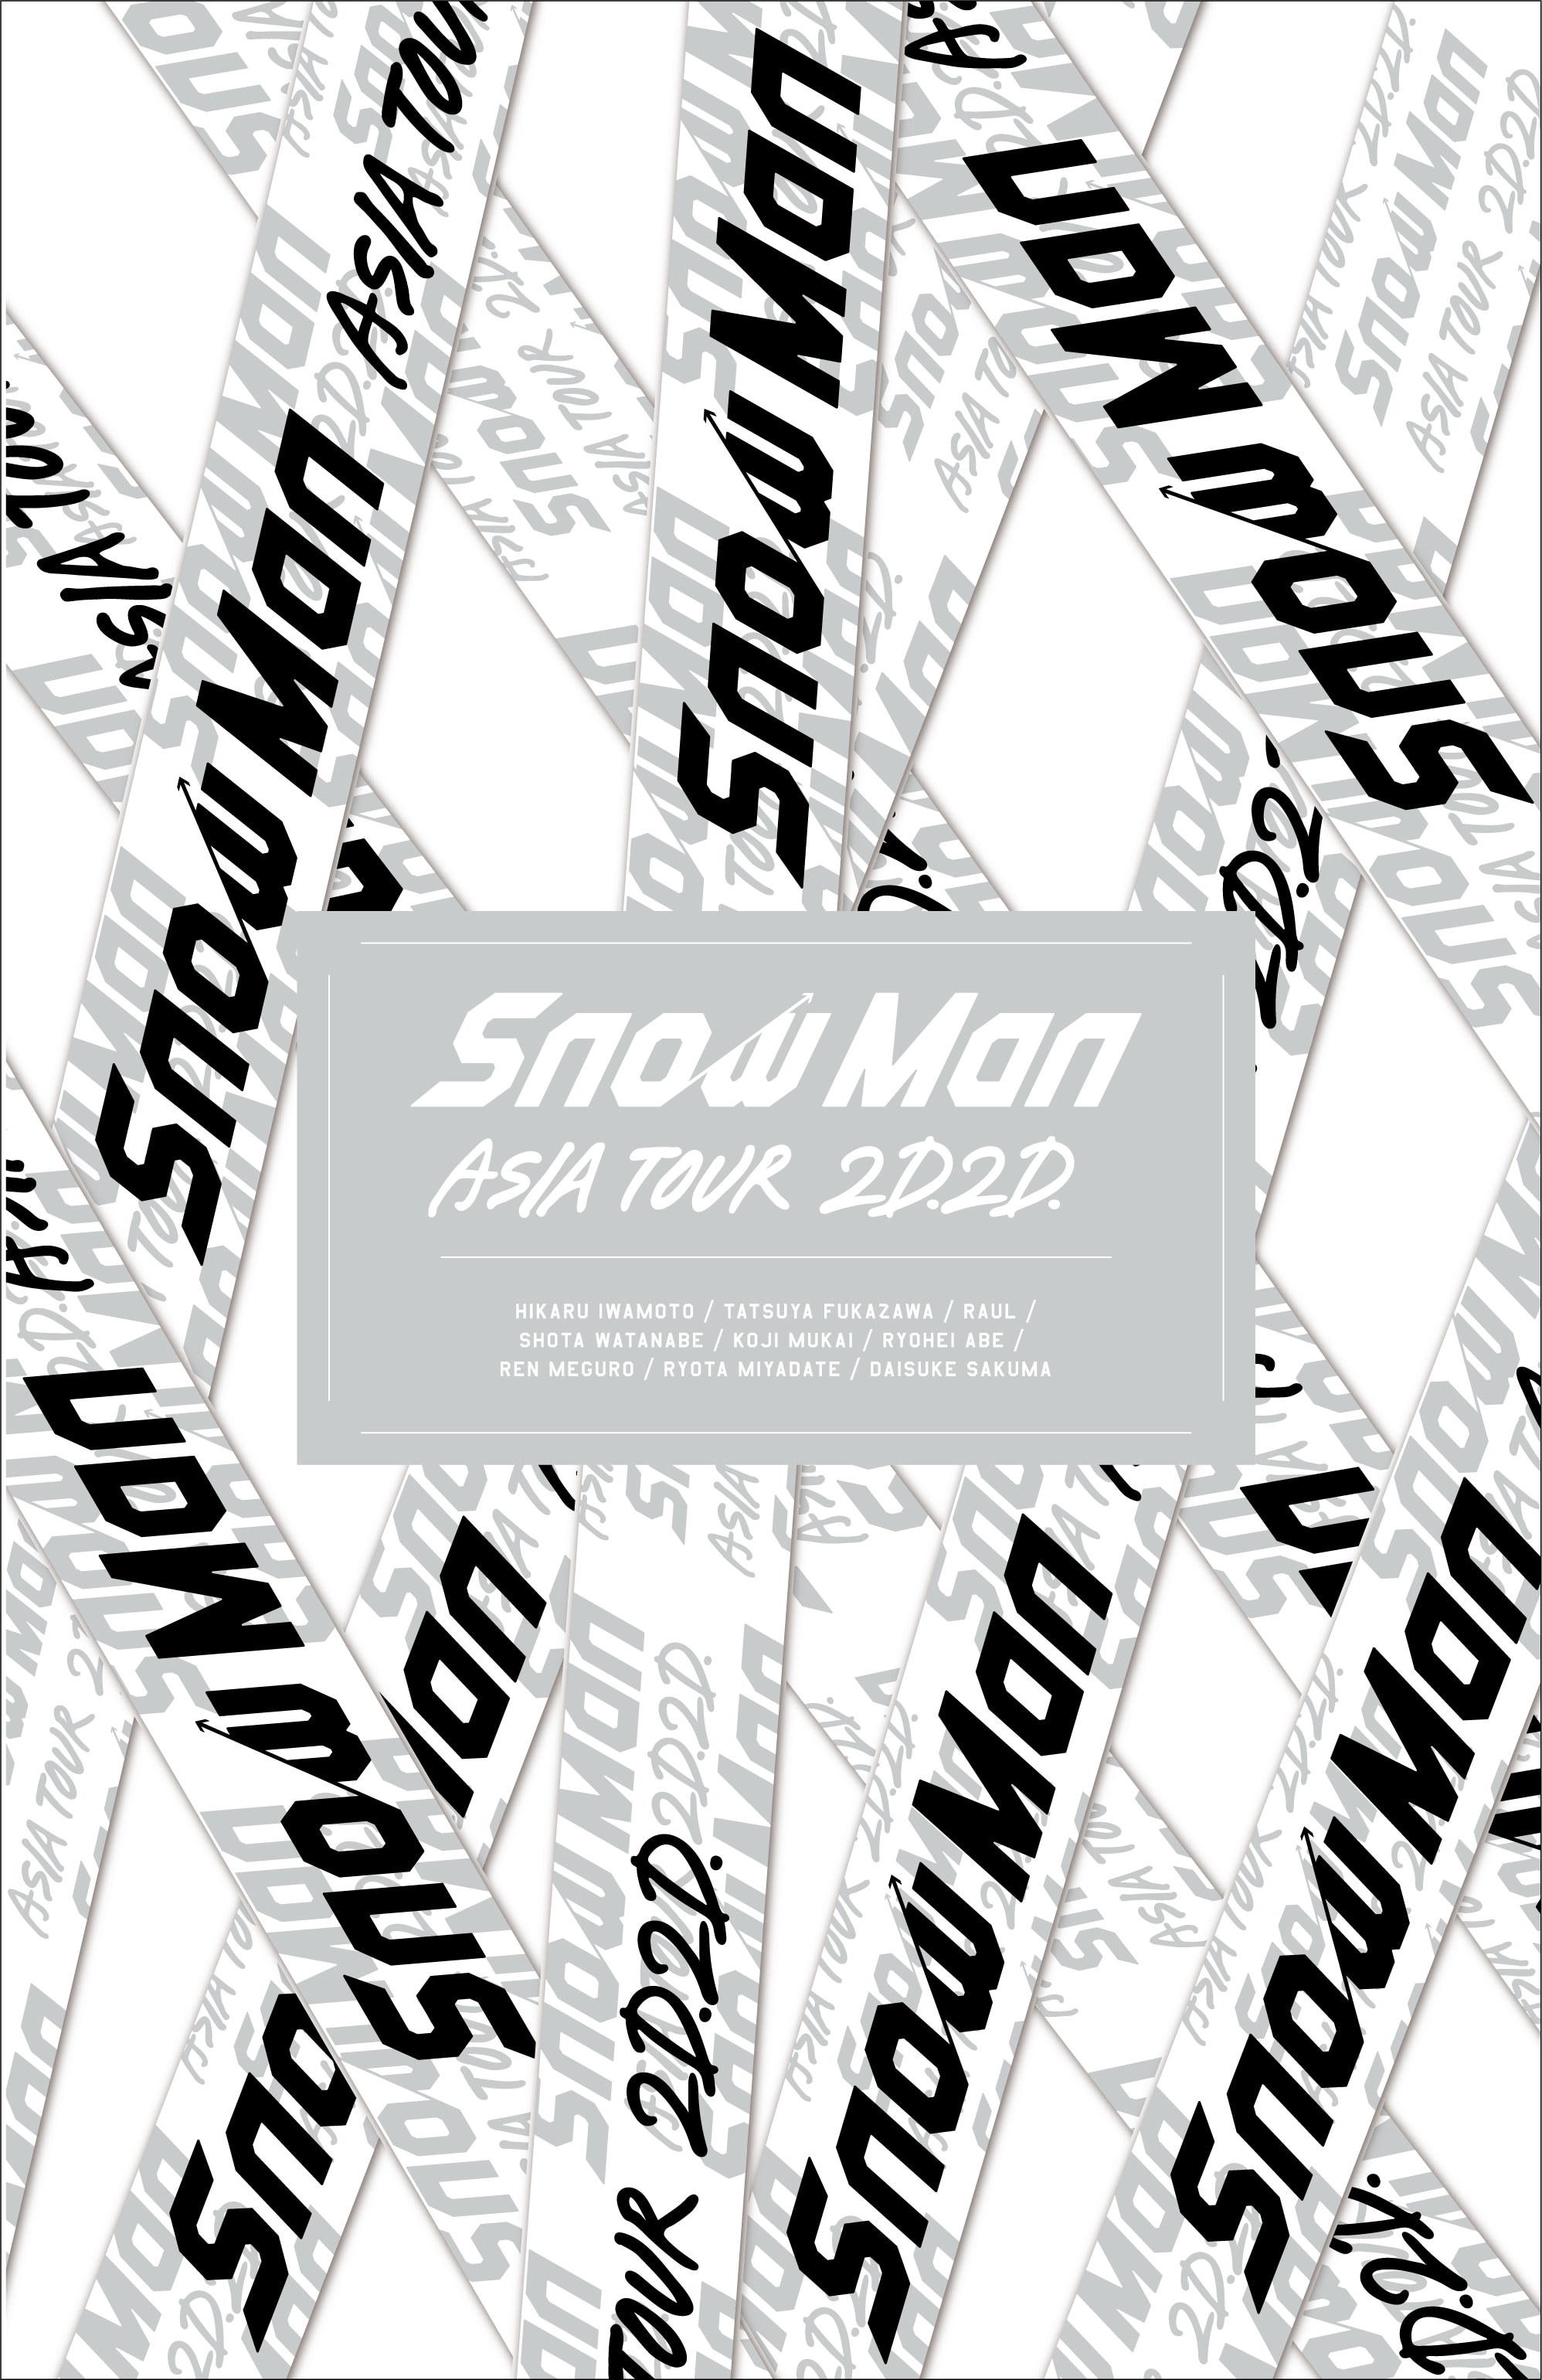 激安先着 Snow Man ASIA TOUR 2D.2D. 初回盤Blu-ray 3broadwaybistro.com